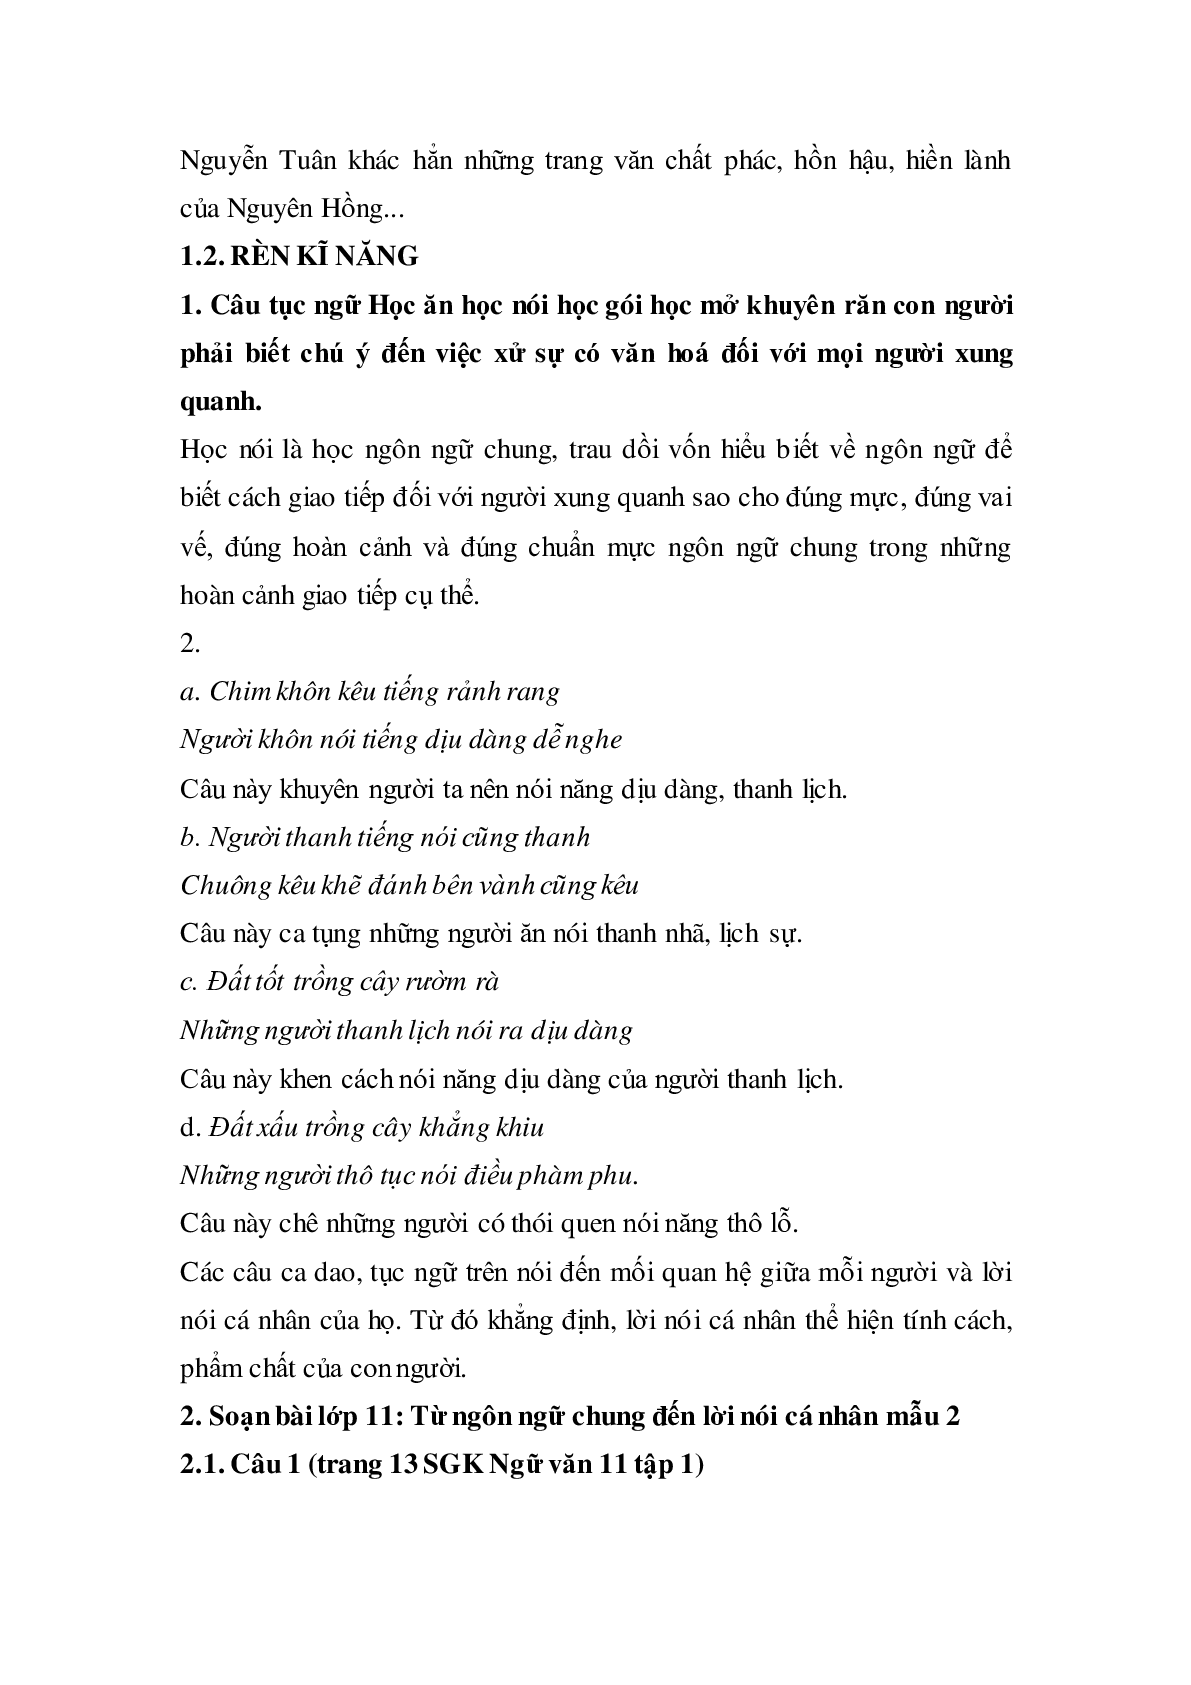 Soạn bài Từ ngôn ngữ chung đến lời nói cá nhân - ngắn nhất Soạn văn 11 (trang 2)